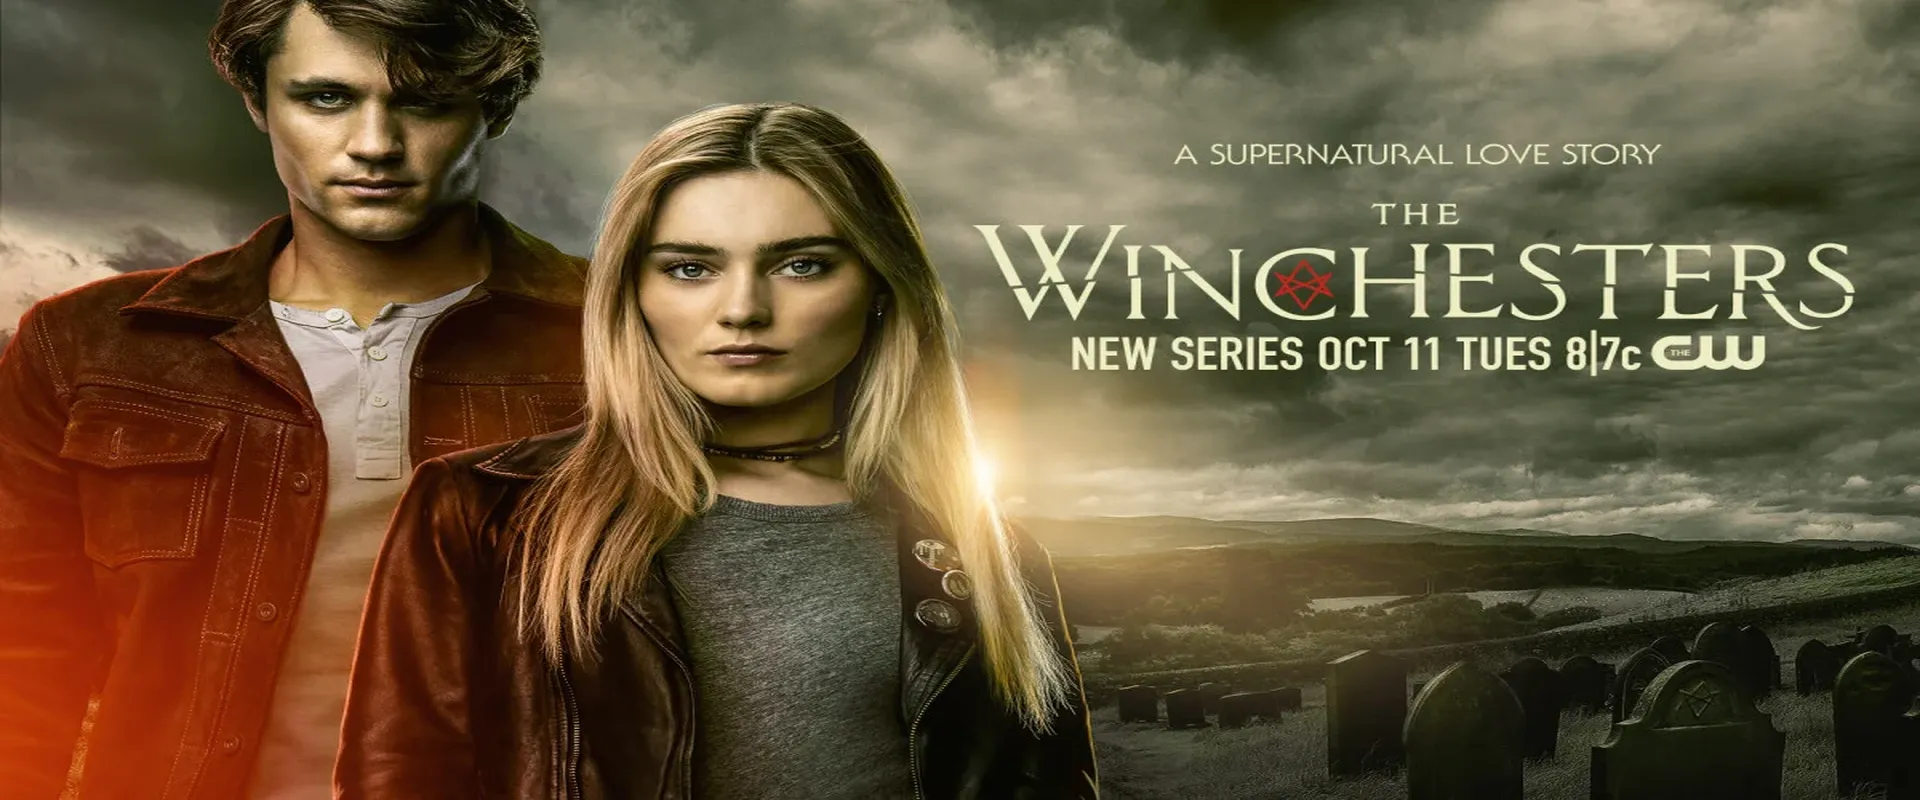 Winchesters Season 1 Episode 11